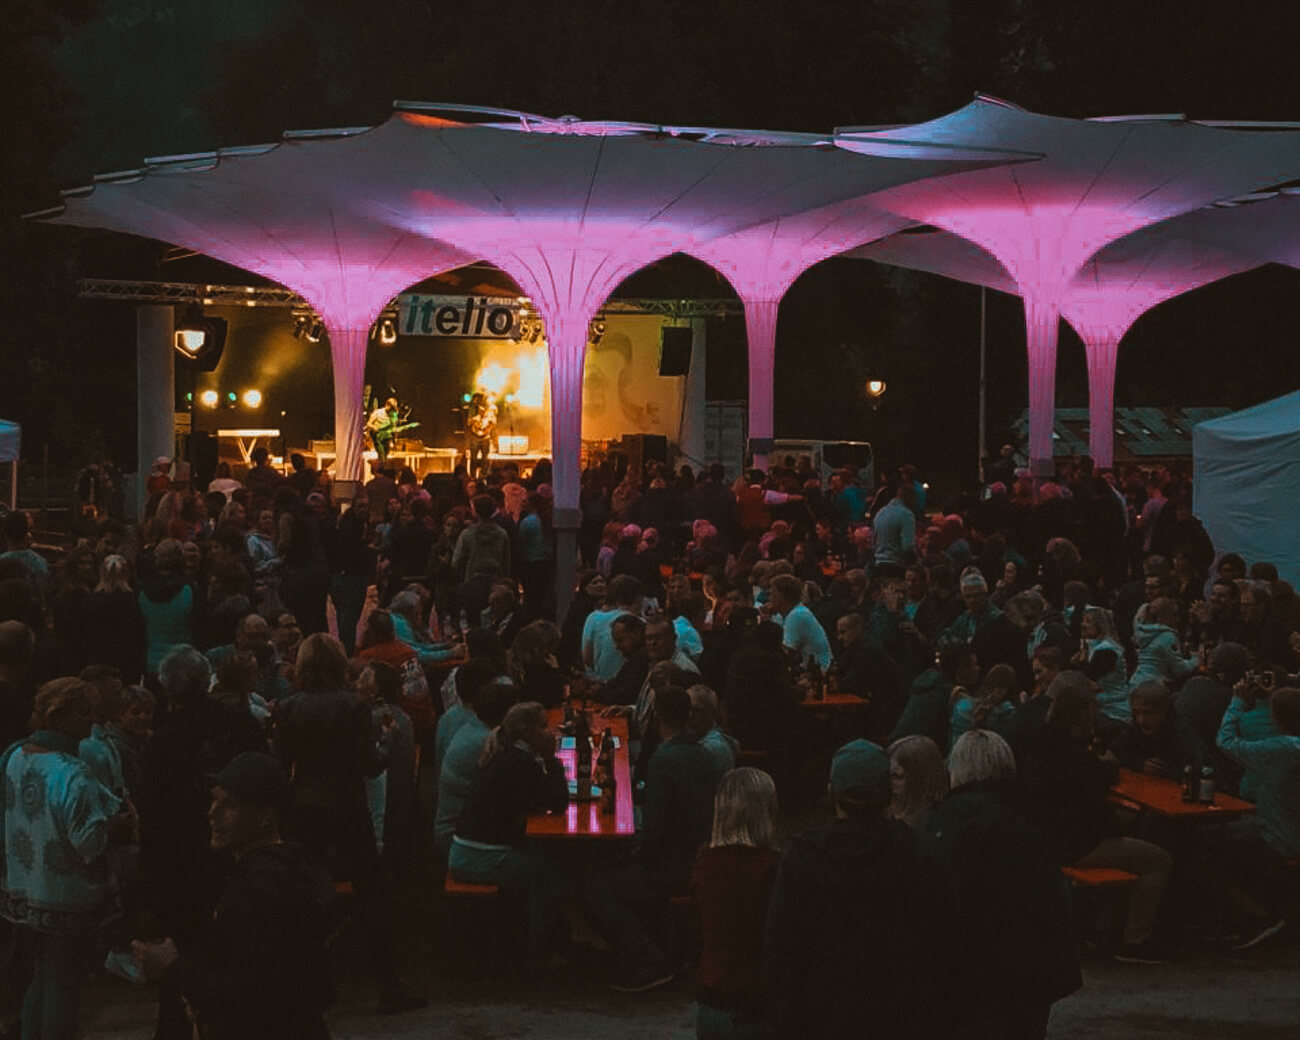 Kurpark bei Nacht mit beleuchteter Bühne und Schirmen, Gäste